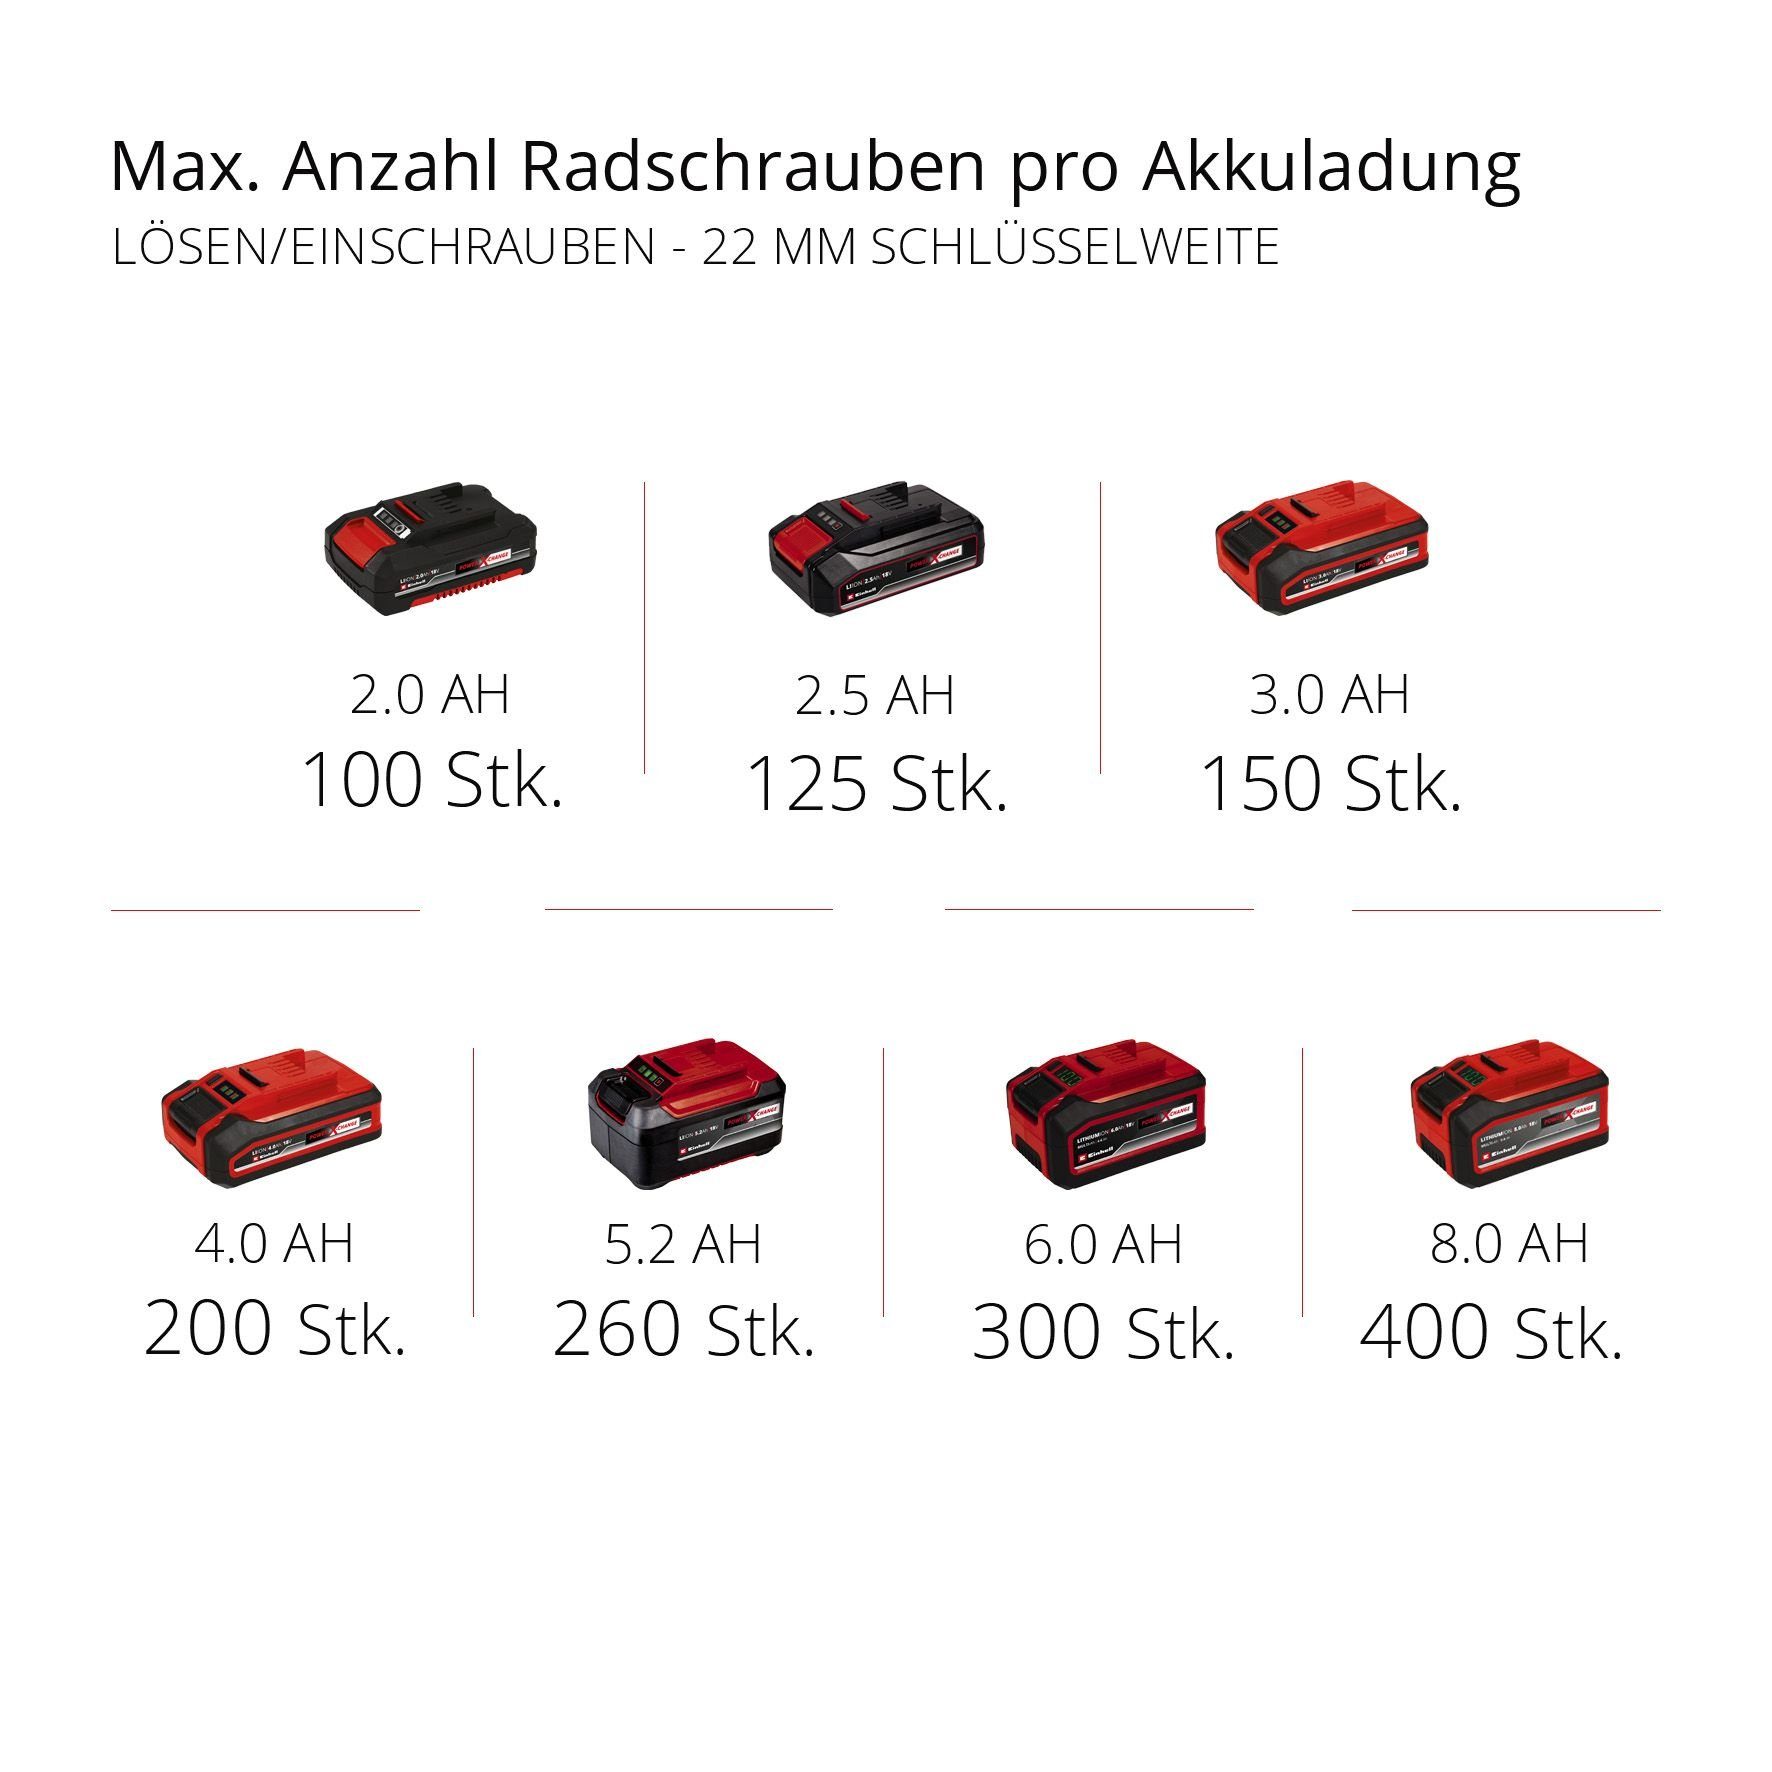 X-Change, 18 BL-solo, U/min, 215 Li TE-CW 2900 Ladegerät und max. Einhell Akku-Schlagbohrschrauber ohne Akku Power Nm,